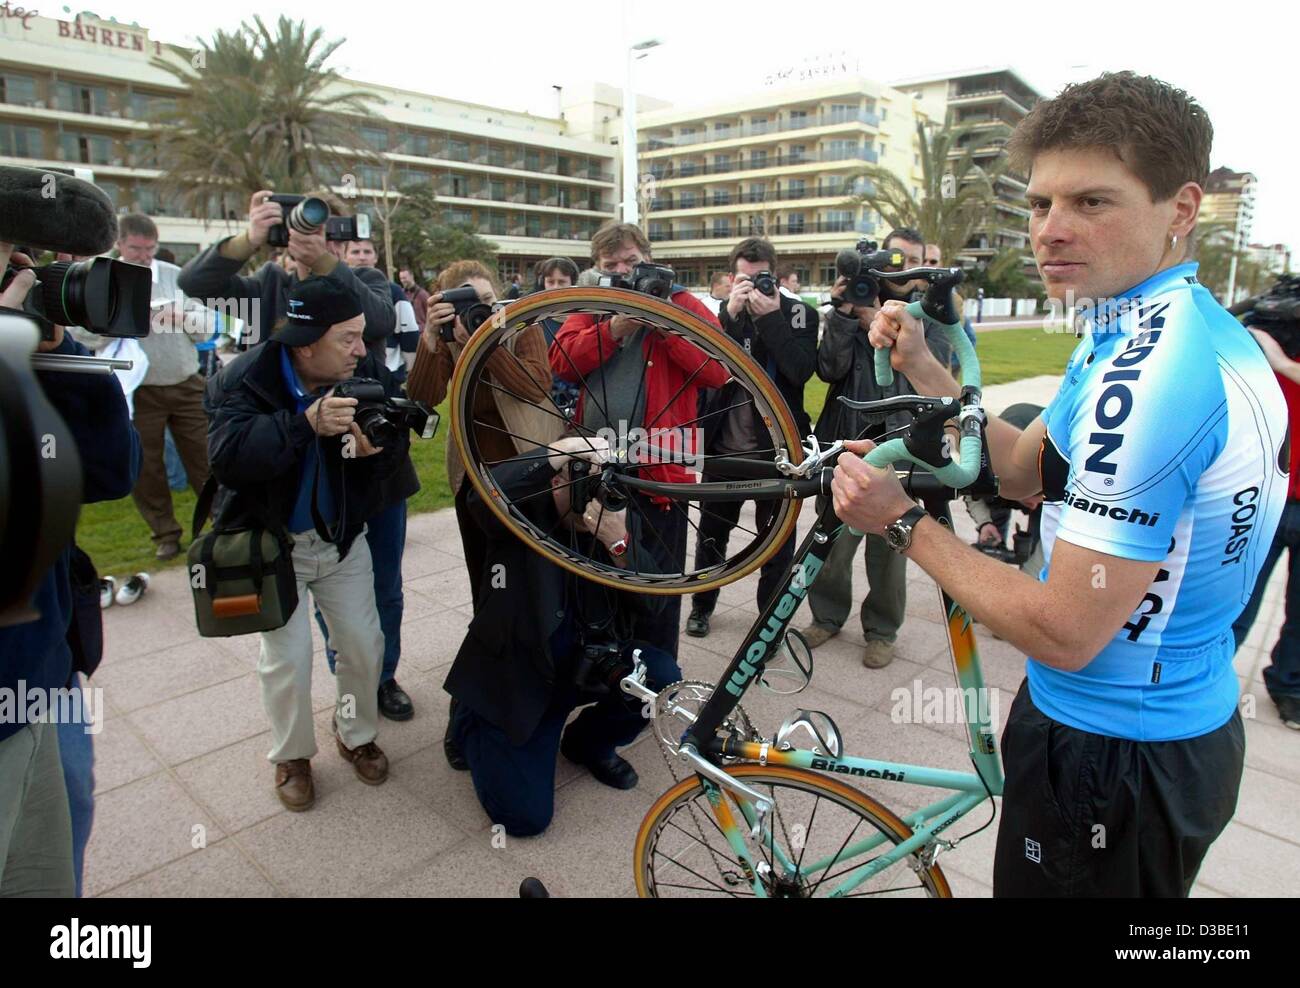 (Afp) - Jan Ullrich, le cyclisme allemand professionnel de l'équipe de la côte, est entouré par les photographes et les équipes de l'appareil photo à Gandia, Espagne, 20 janvier 2003. Au cours d'une journée d'ouverture, l'équipe cycliste professionnelle de Essen, Allemagne, se présente aux médias. Champion du monde de cyclisme Jan Ullrich a tr Banque D'Images